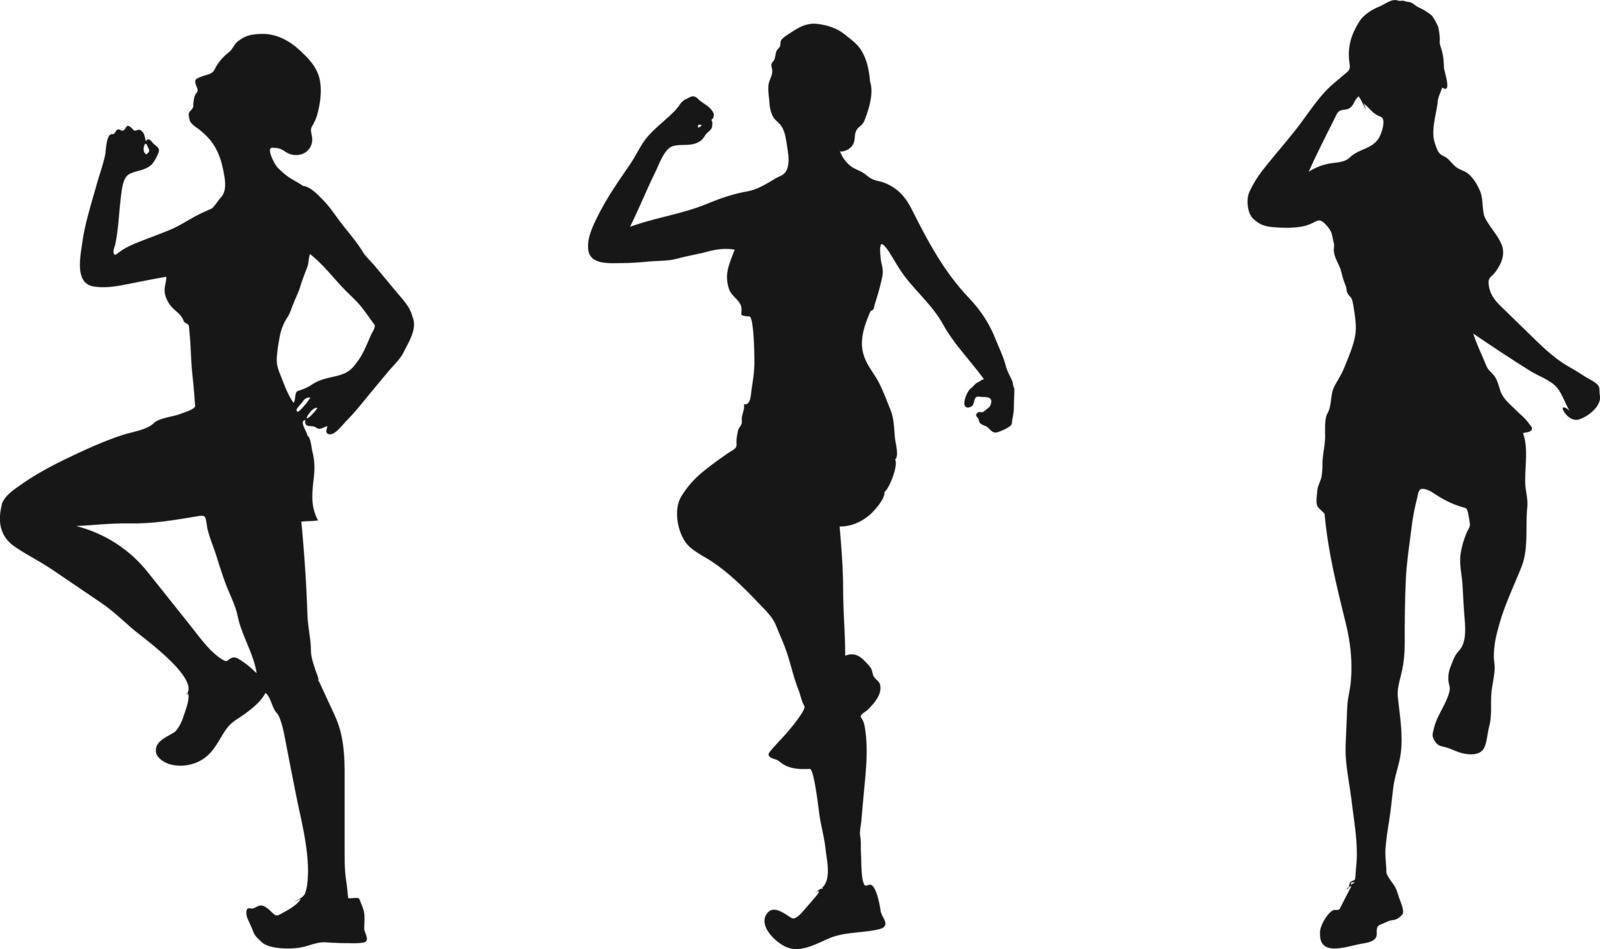 EPS 10 vector illustration of runner silhouette